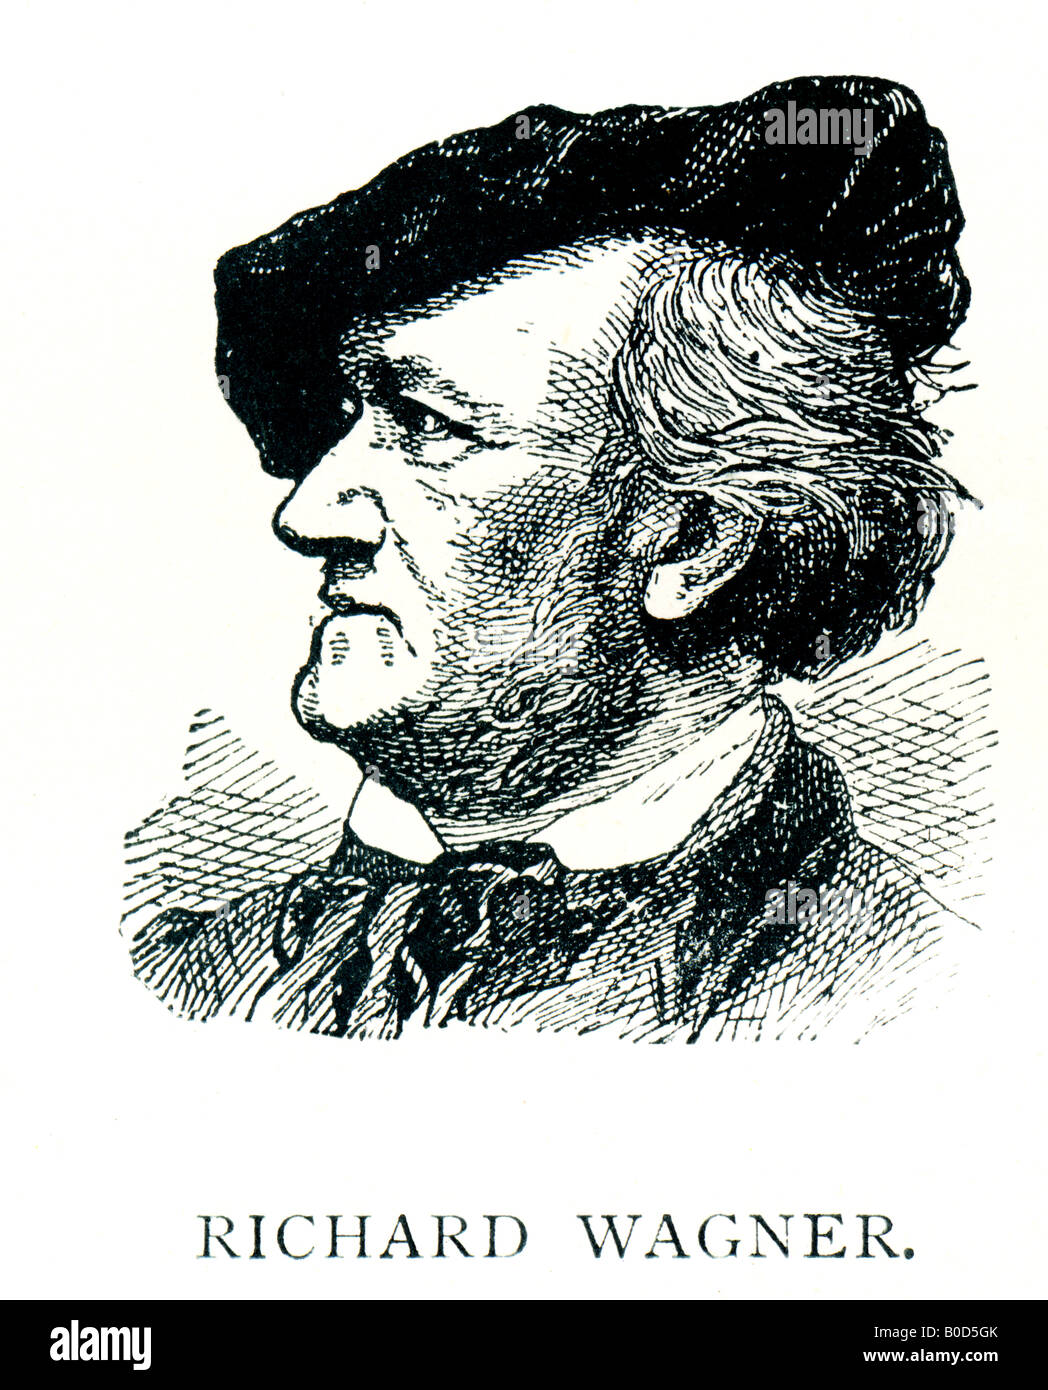 Acier inox gravé victorienne 1892 Imprimer de Richard Wagner, compositeur de musique pour un usage éditorial uniquement Banque D'Images